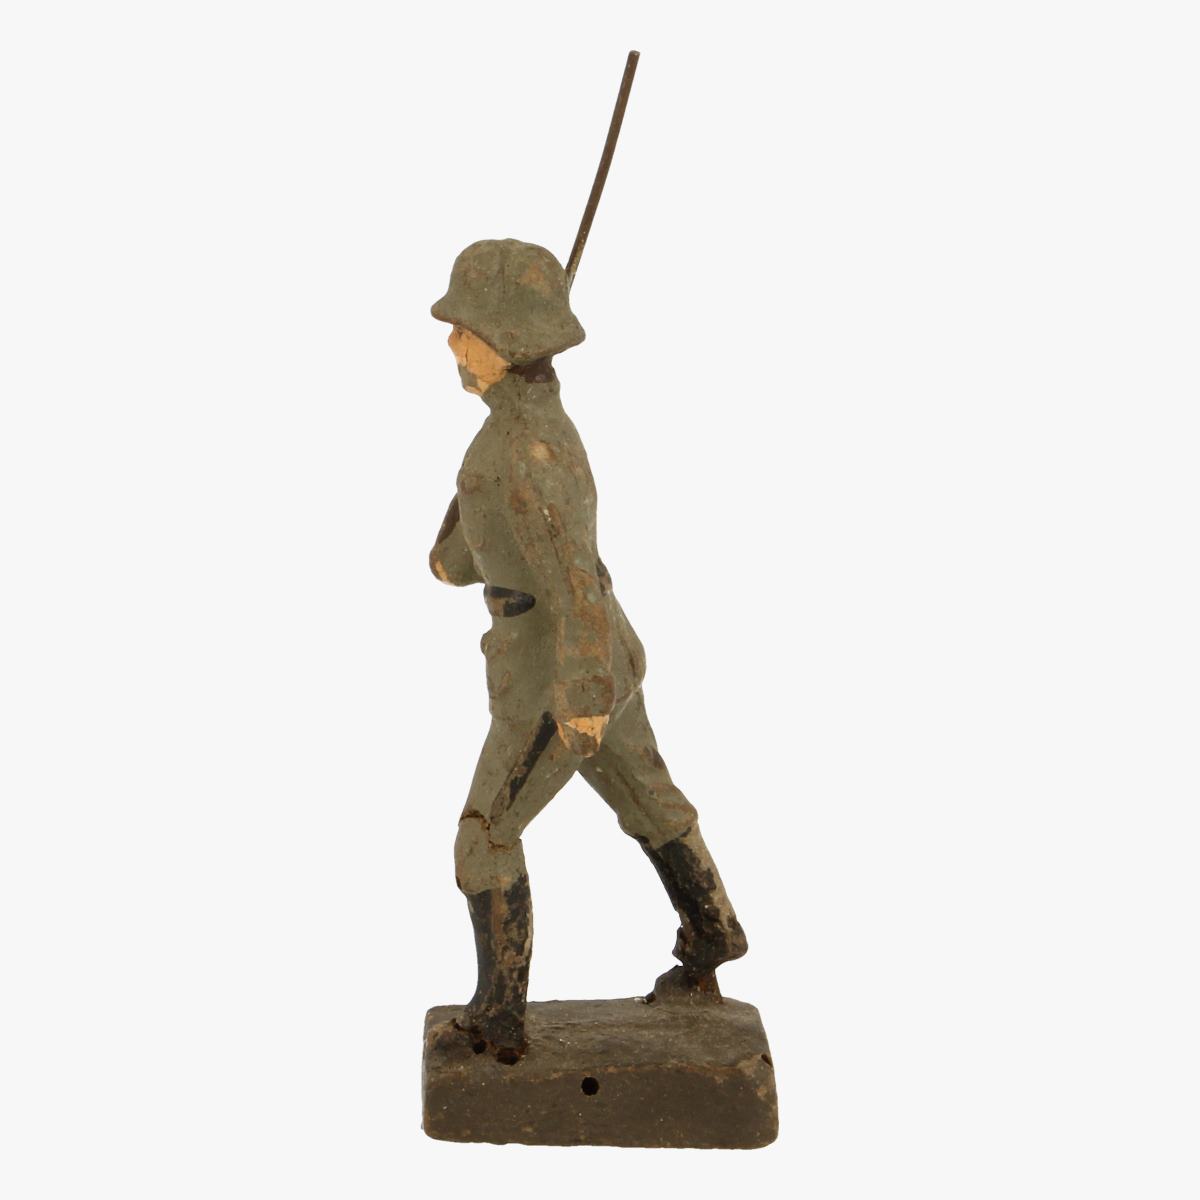 Afbeeldingen van elastolin soldaatje strola Germany